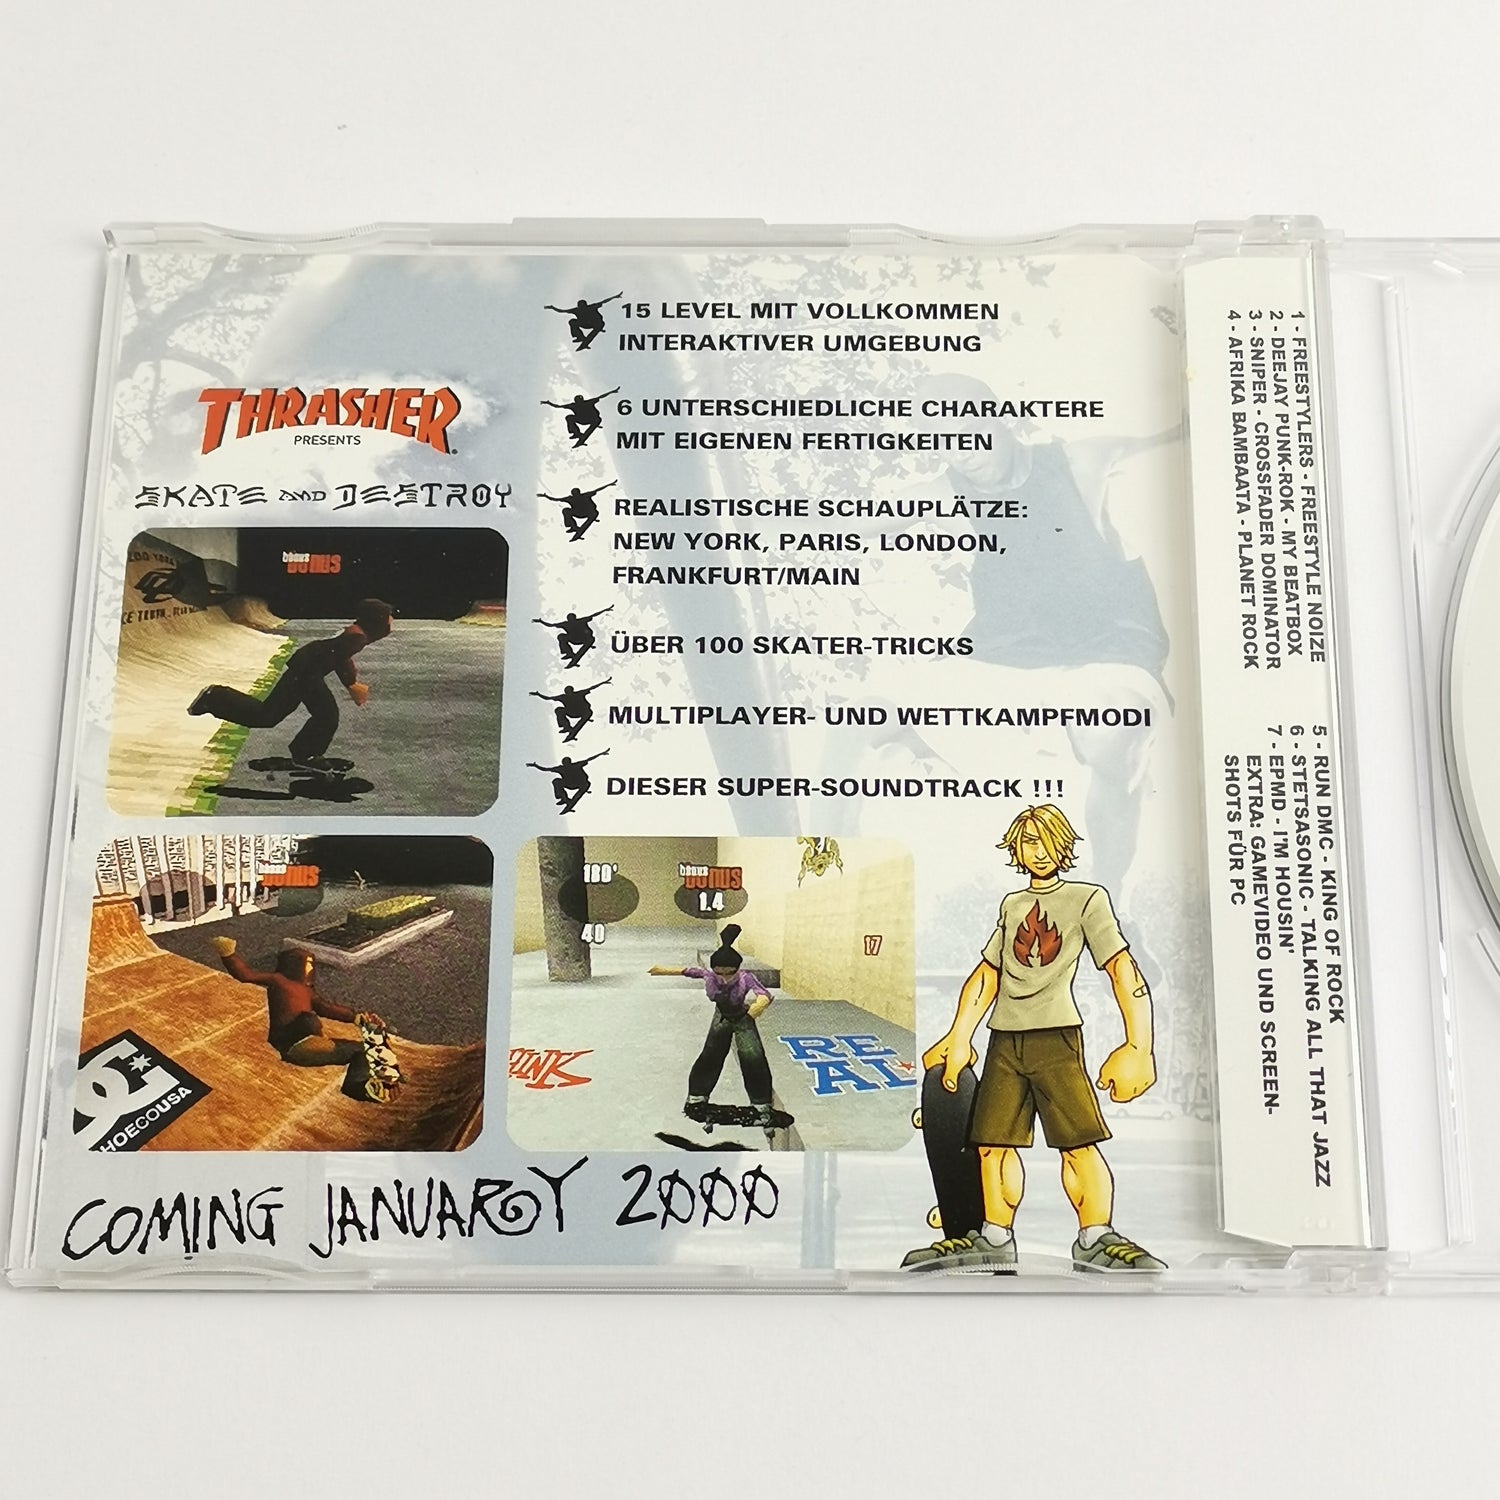 Audio Soundtrack CD zu dem Spiel : Trasher Skate and Destroy - PS1